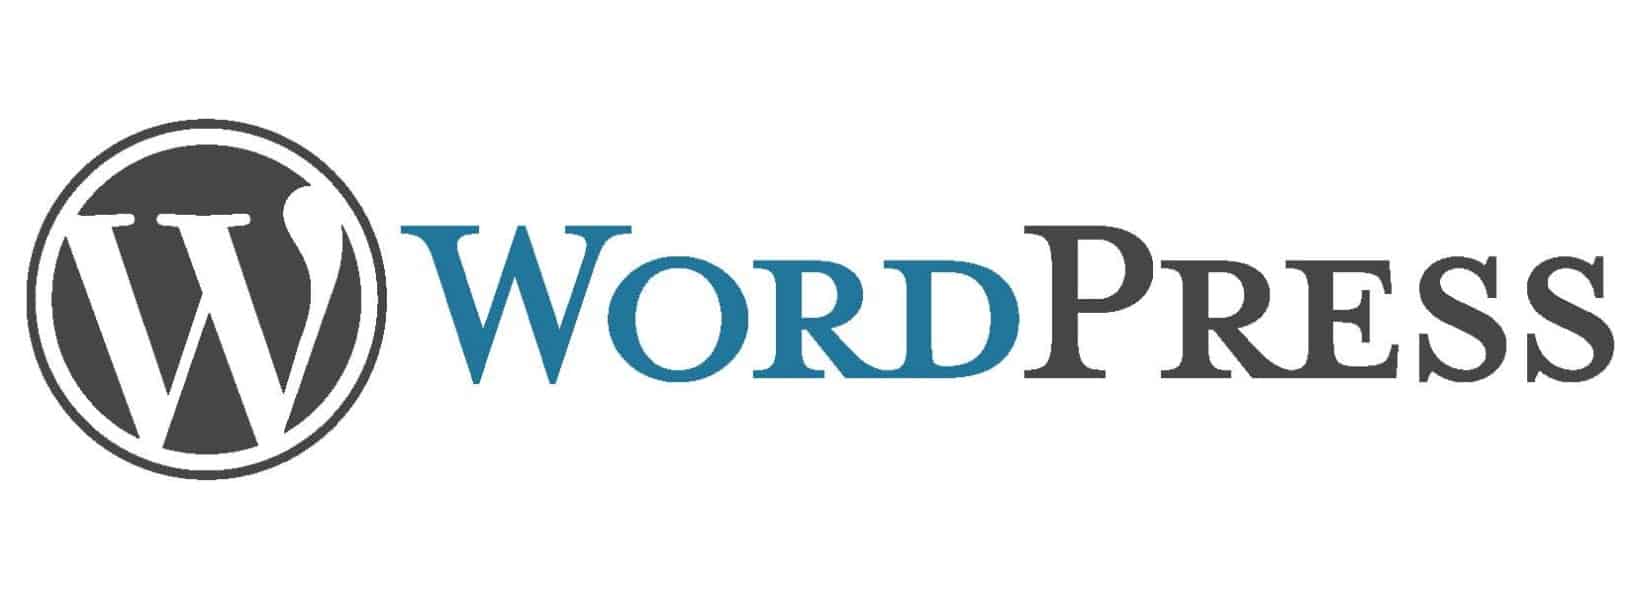 Gdzie szukać informacji na temat WordPressa? – Cz. 2. Źródła polskie